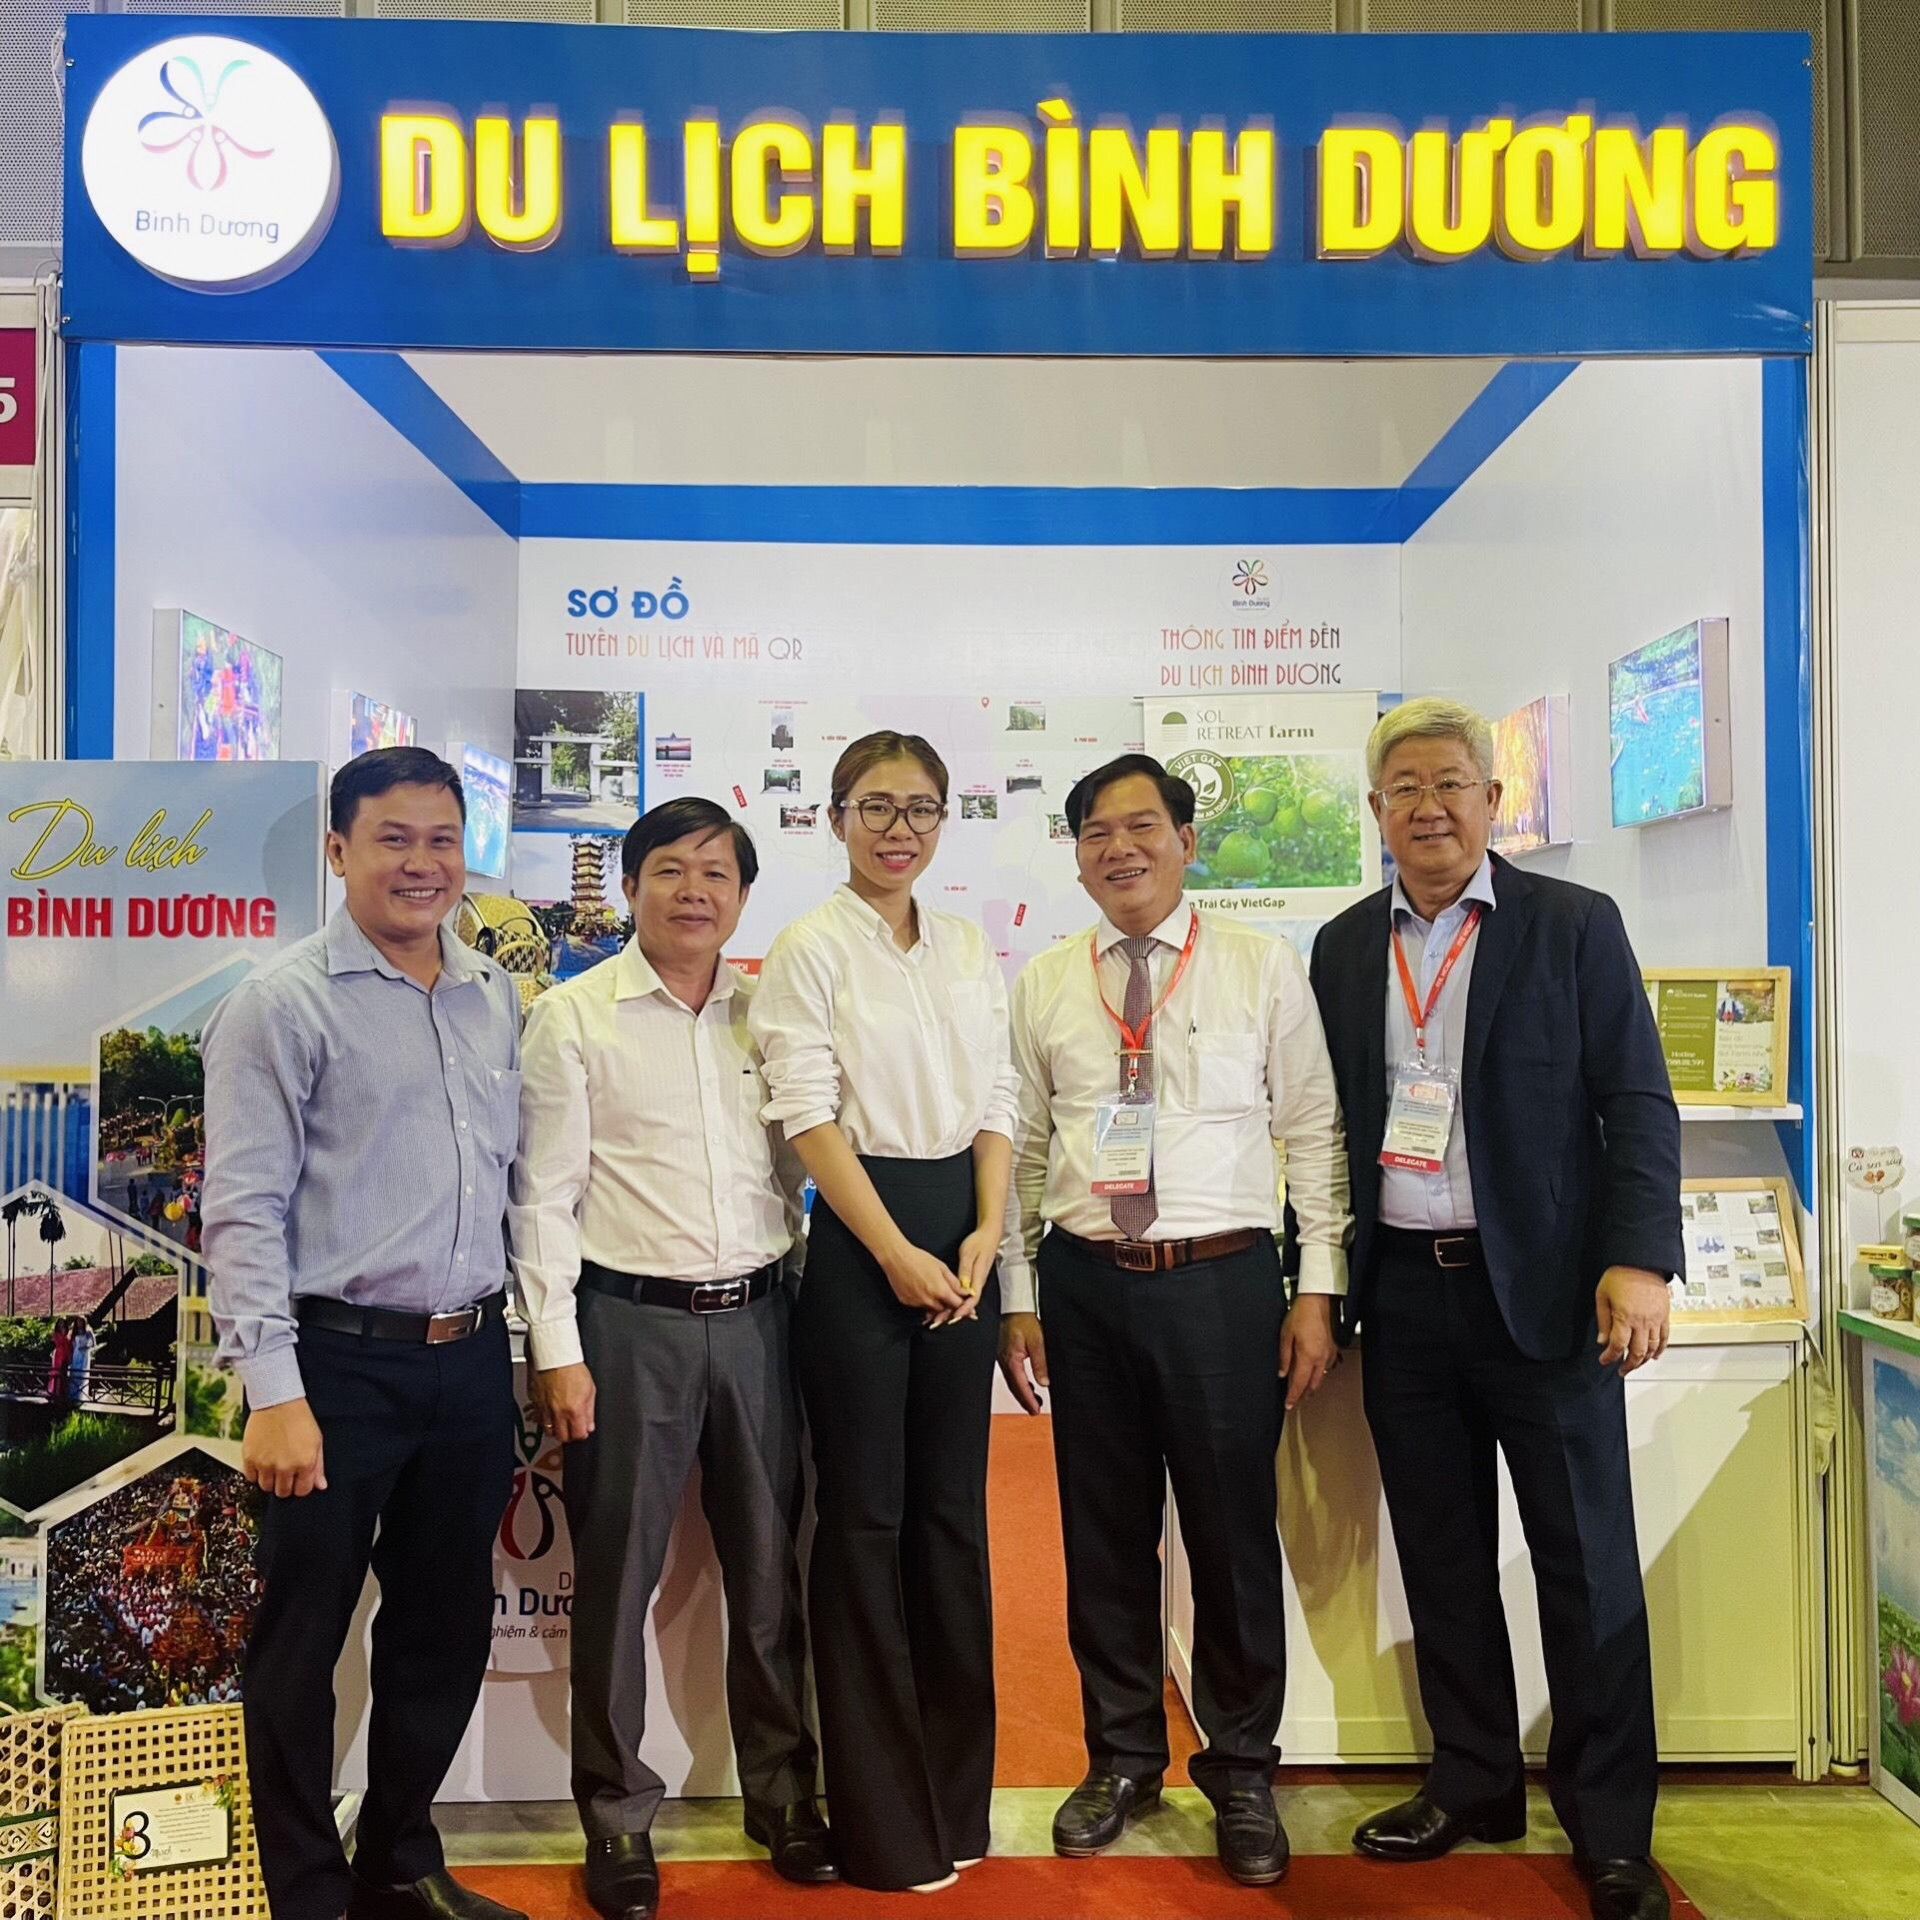 Bình Dương tham gia Hội chợ Du lịch Quốc tế TP.Hồ Chí Minh lần thứ 16 năm 2022 (ITE HCMC 2022)